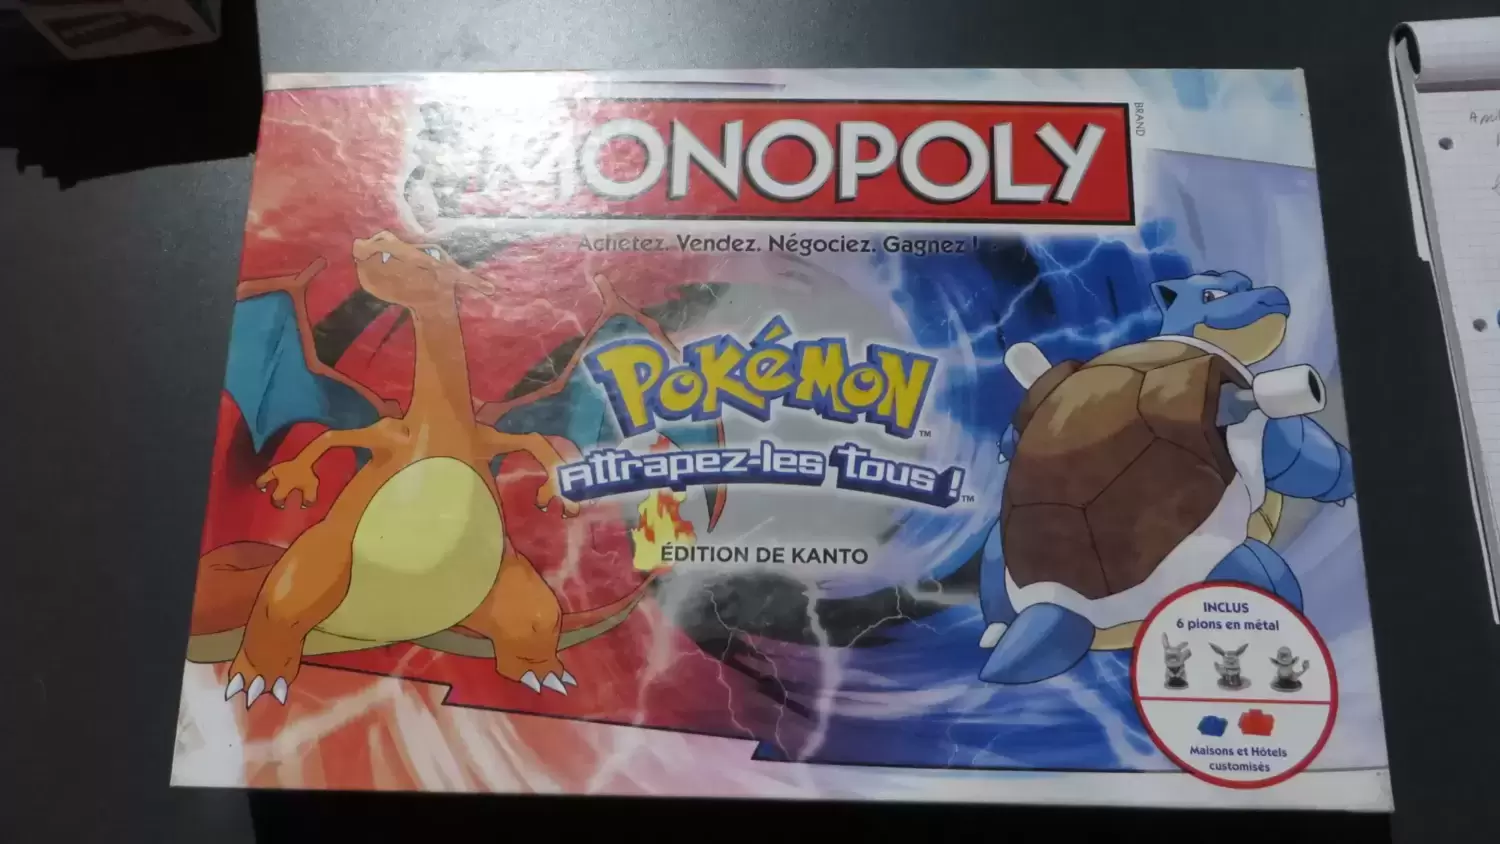 Monopoly Jeux vidéo - Monopoly Pokémon Edition de Kanto